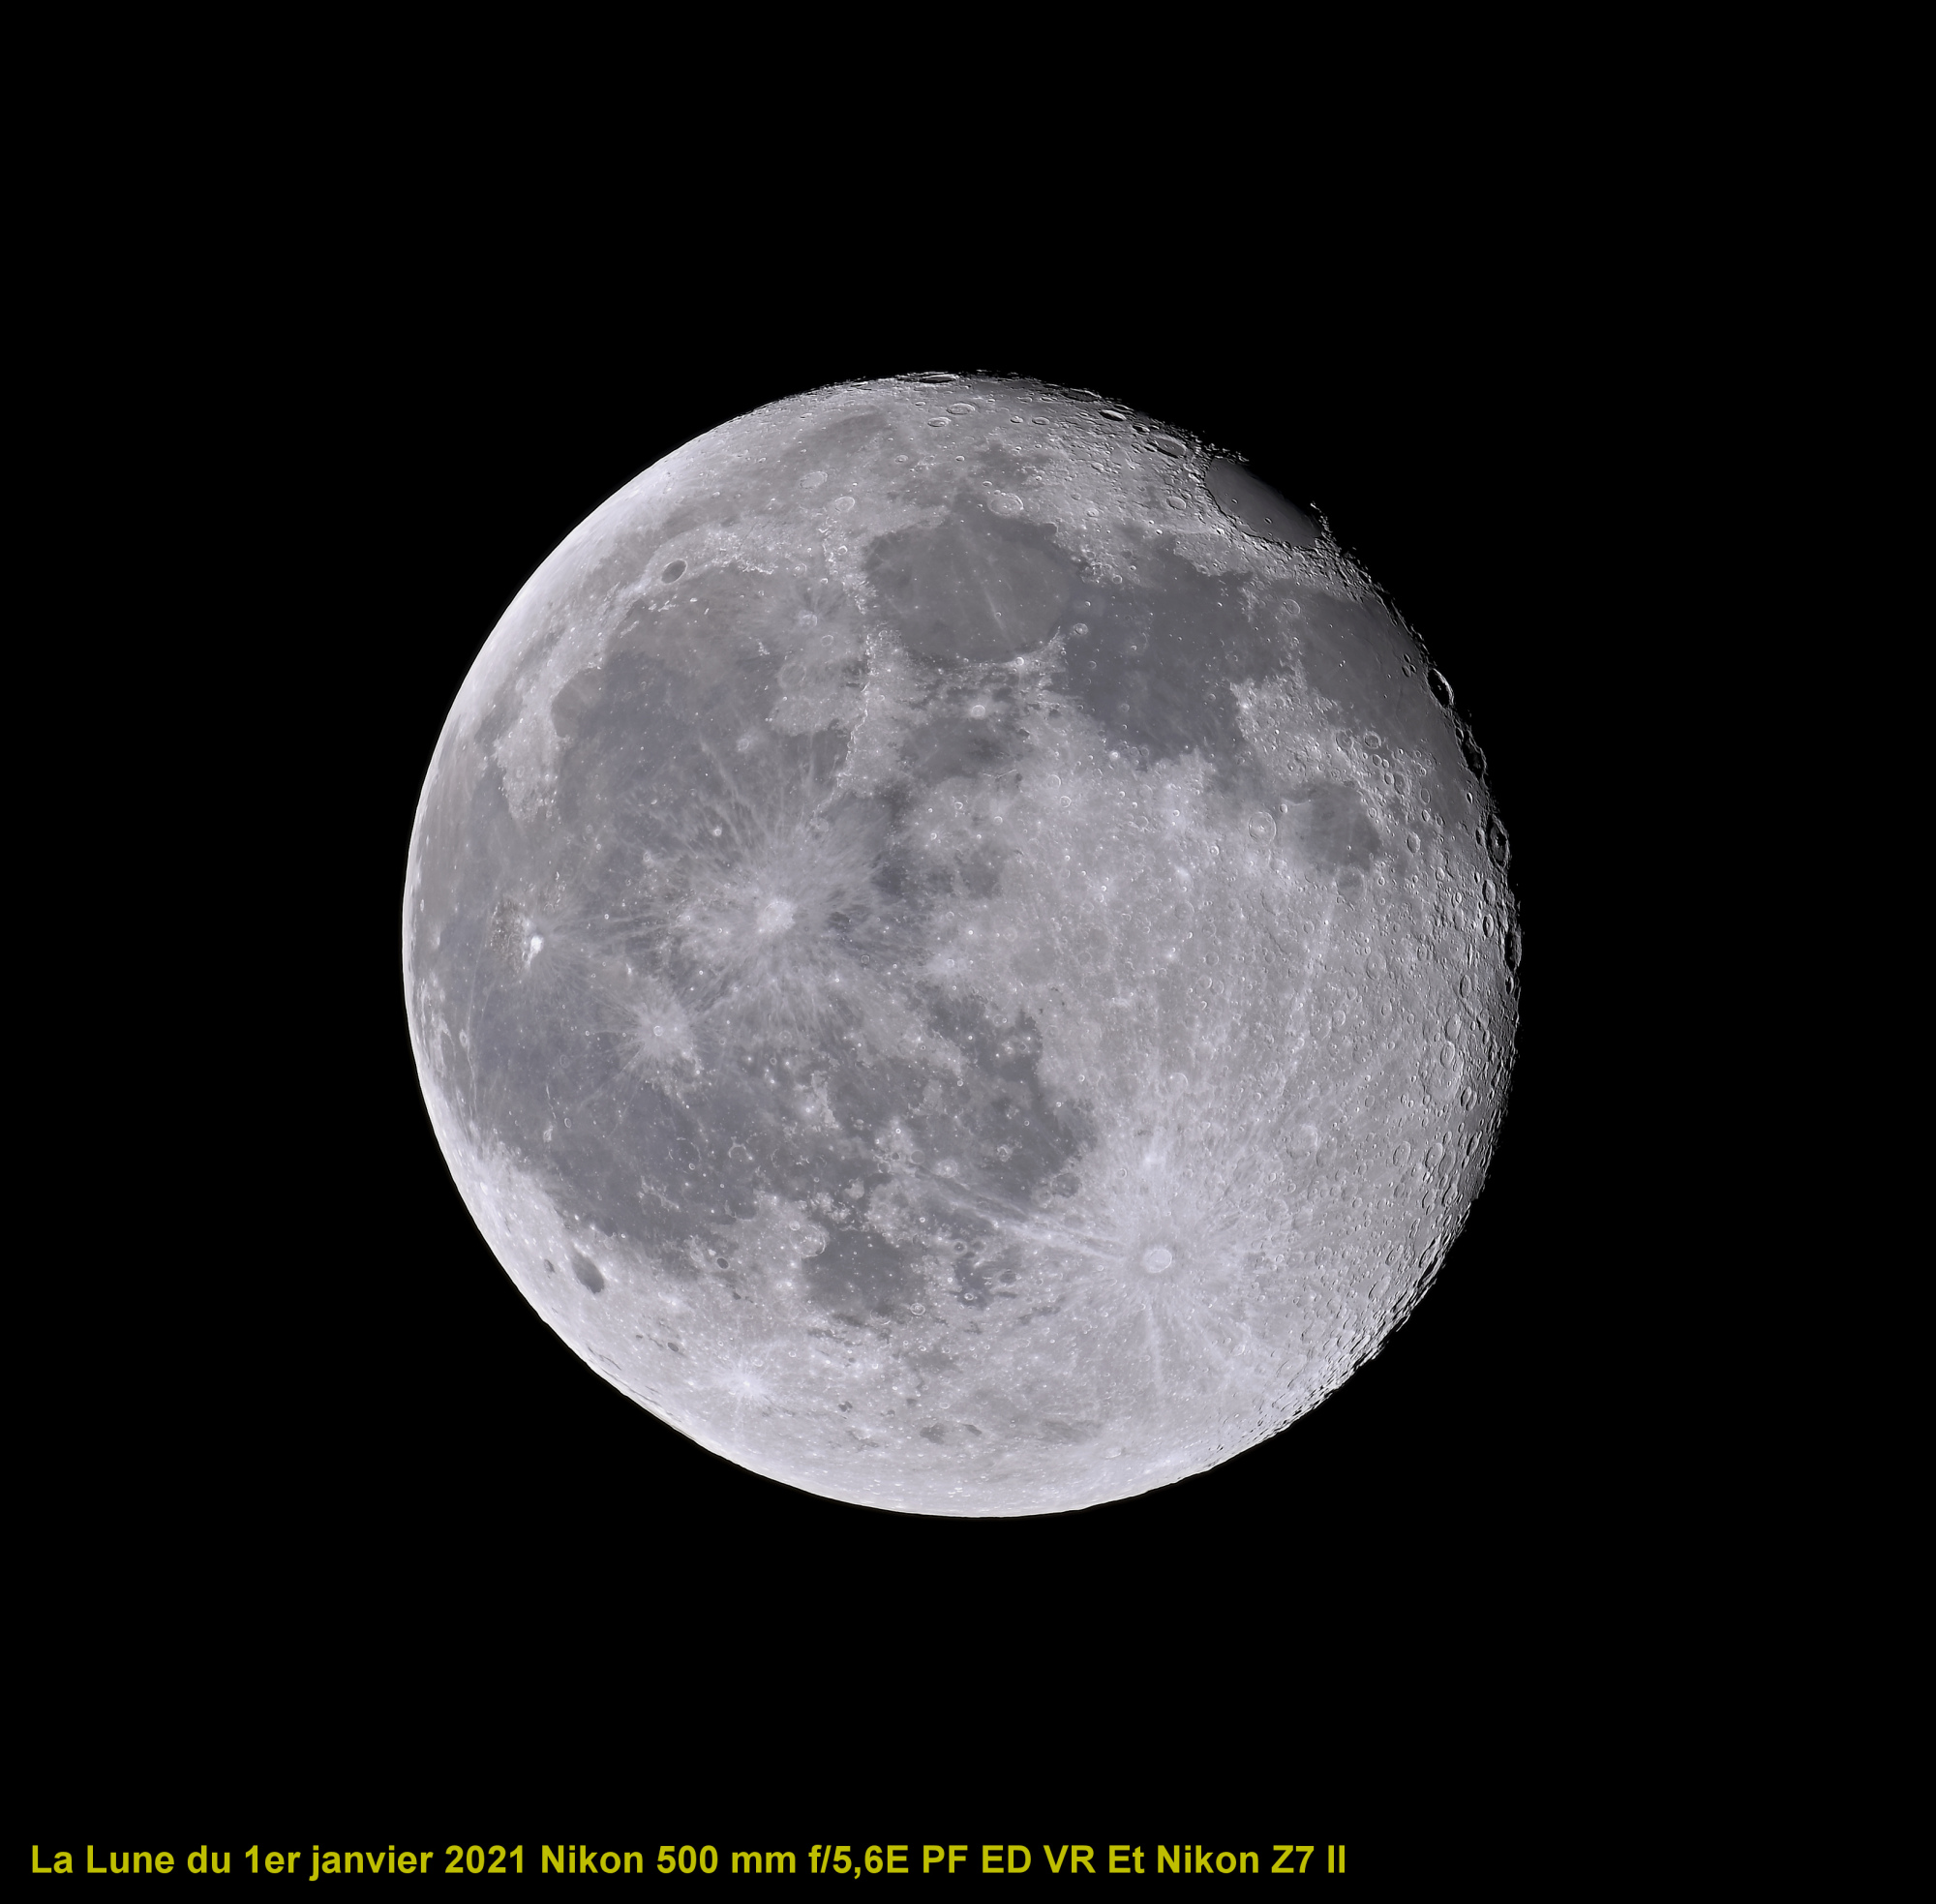 La Lune 20  images du 1er janvier 2021.jpg